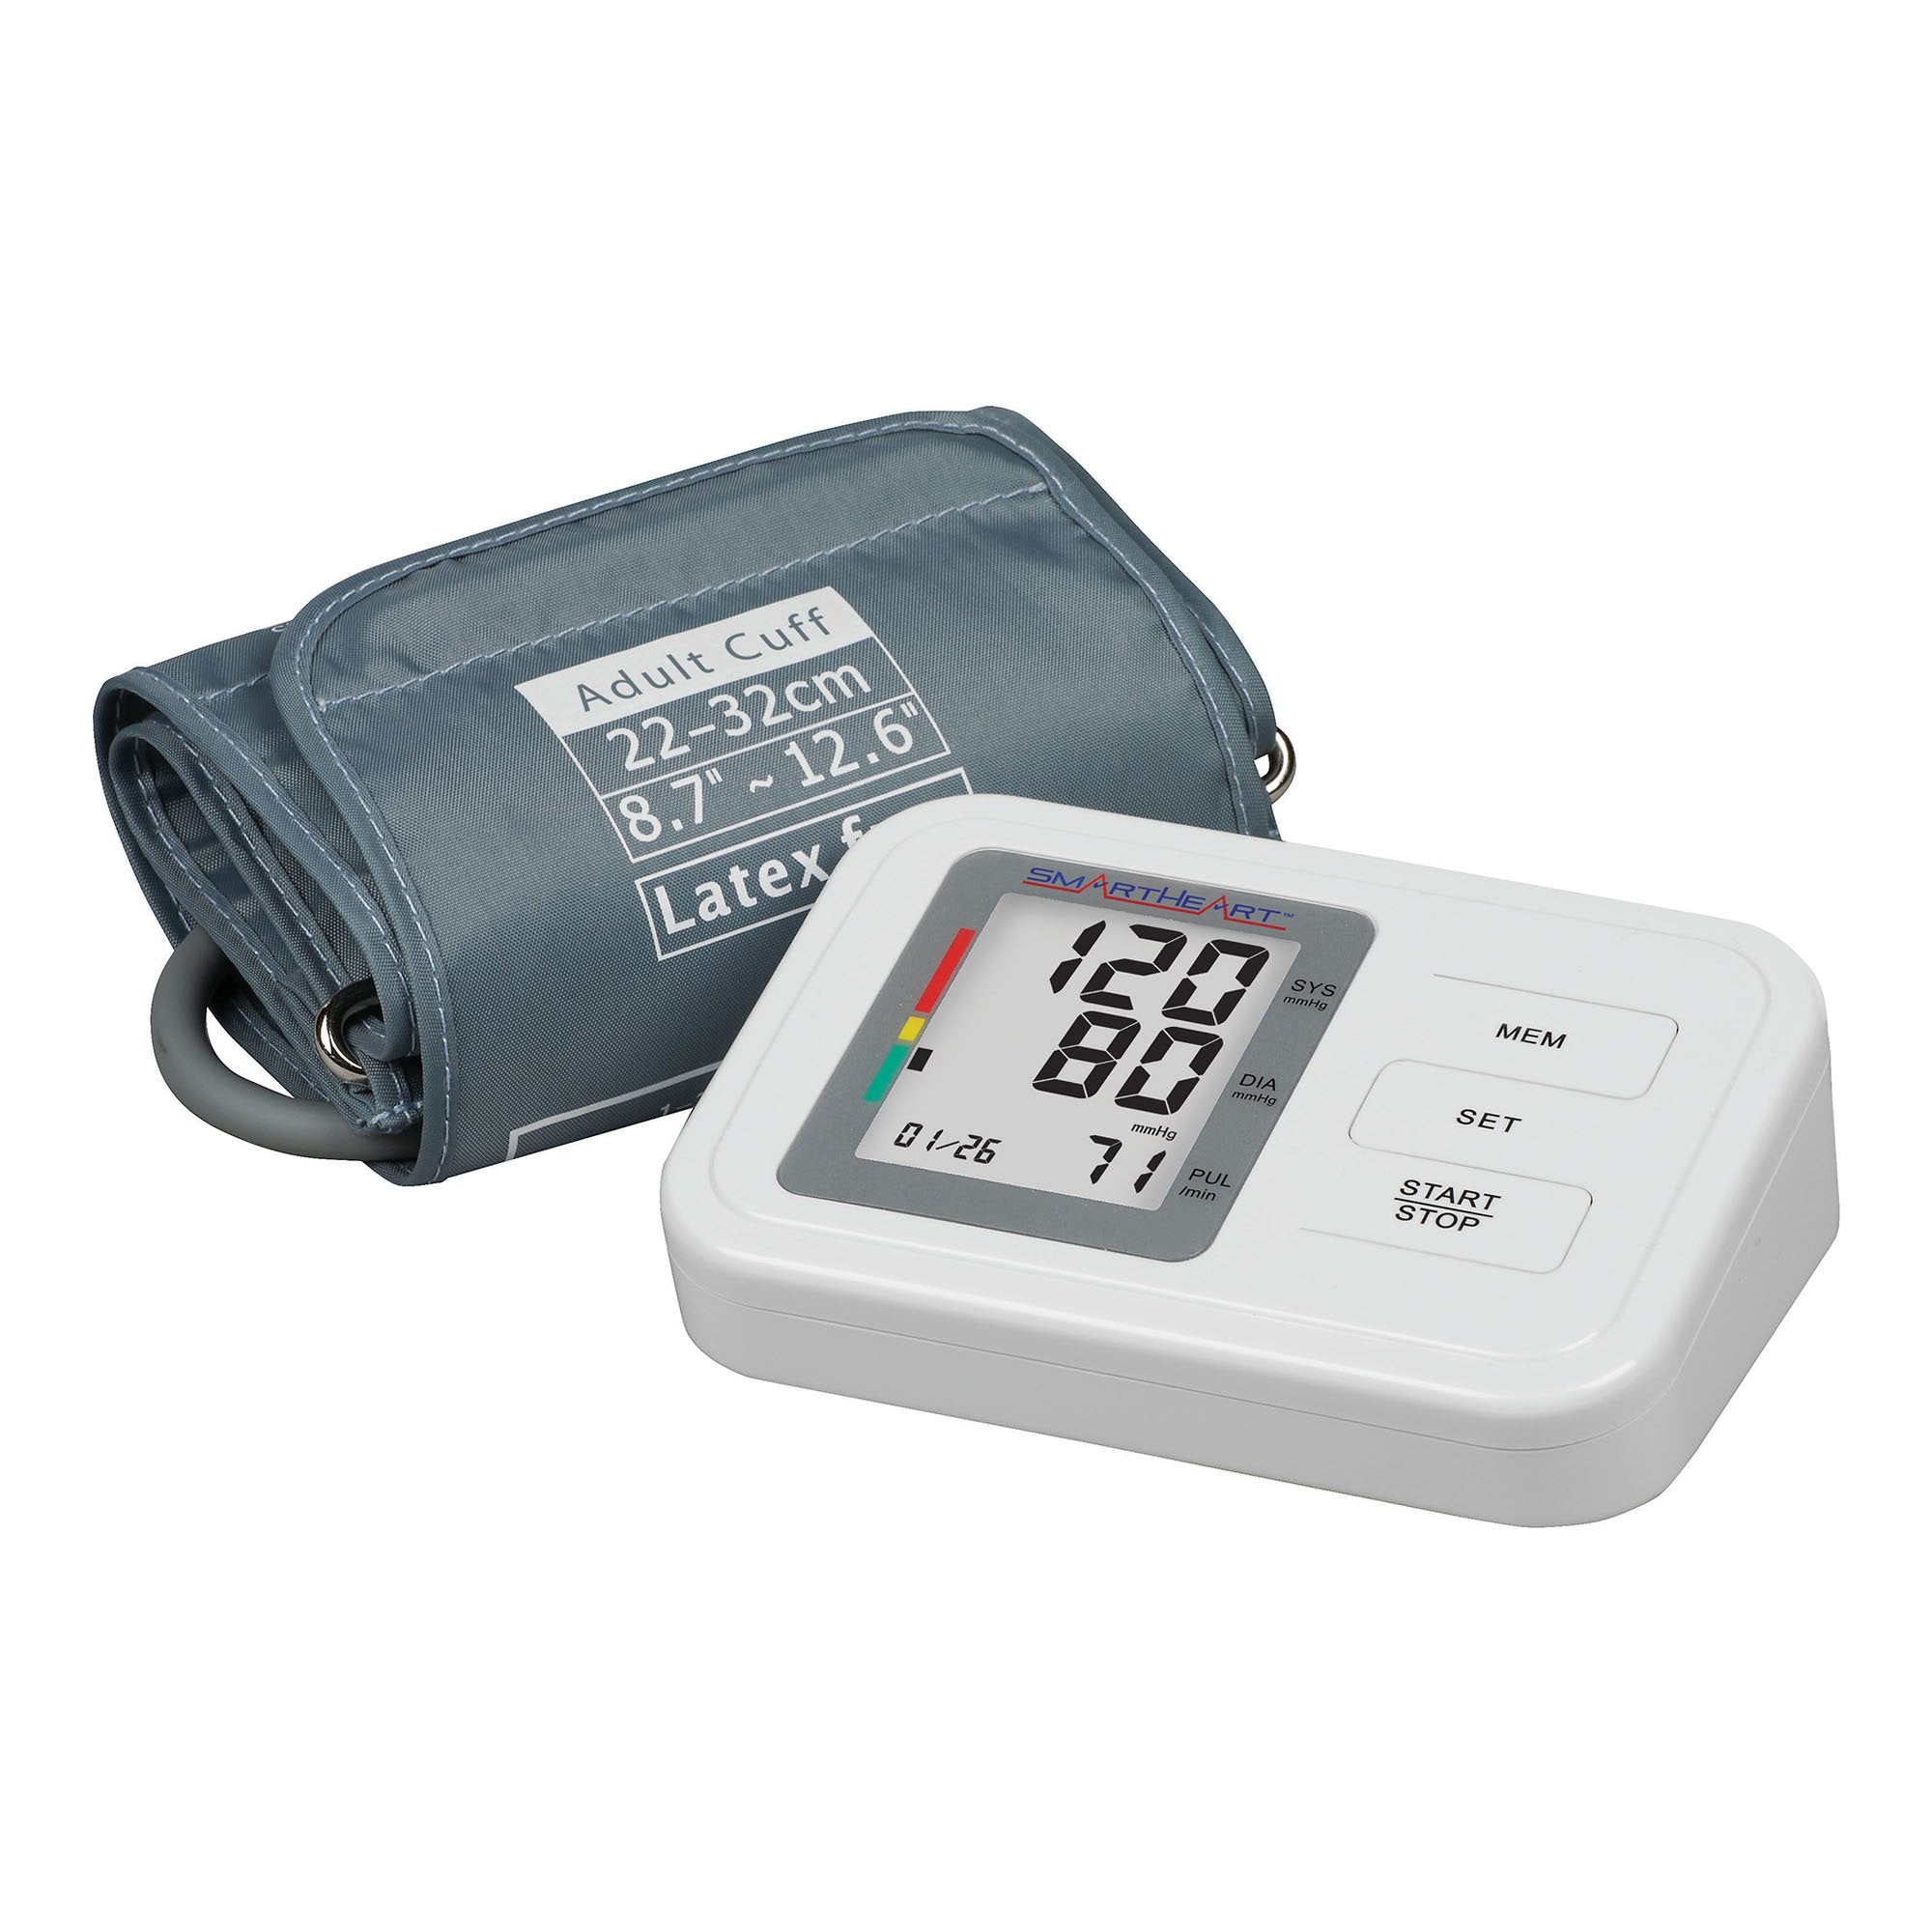 Home Automatic Digital Blood Pressure Monitor Smartheart Adult Cuff Nylon Cuff 22 to 32 cm Desk Model